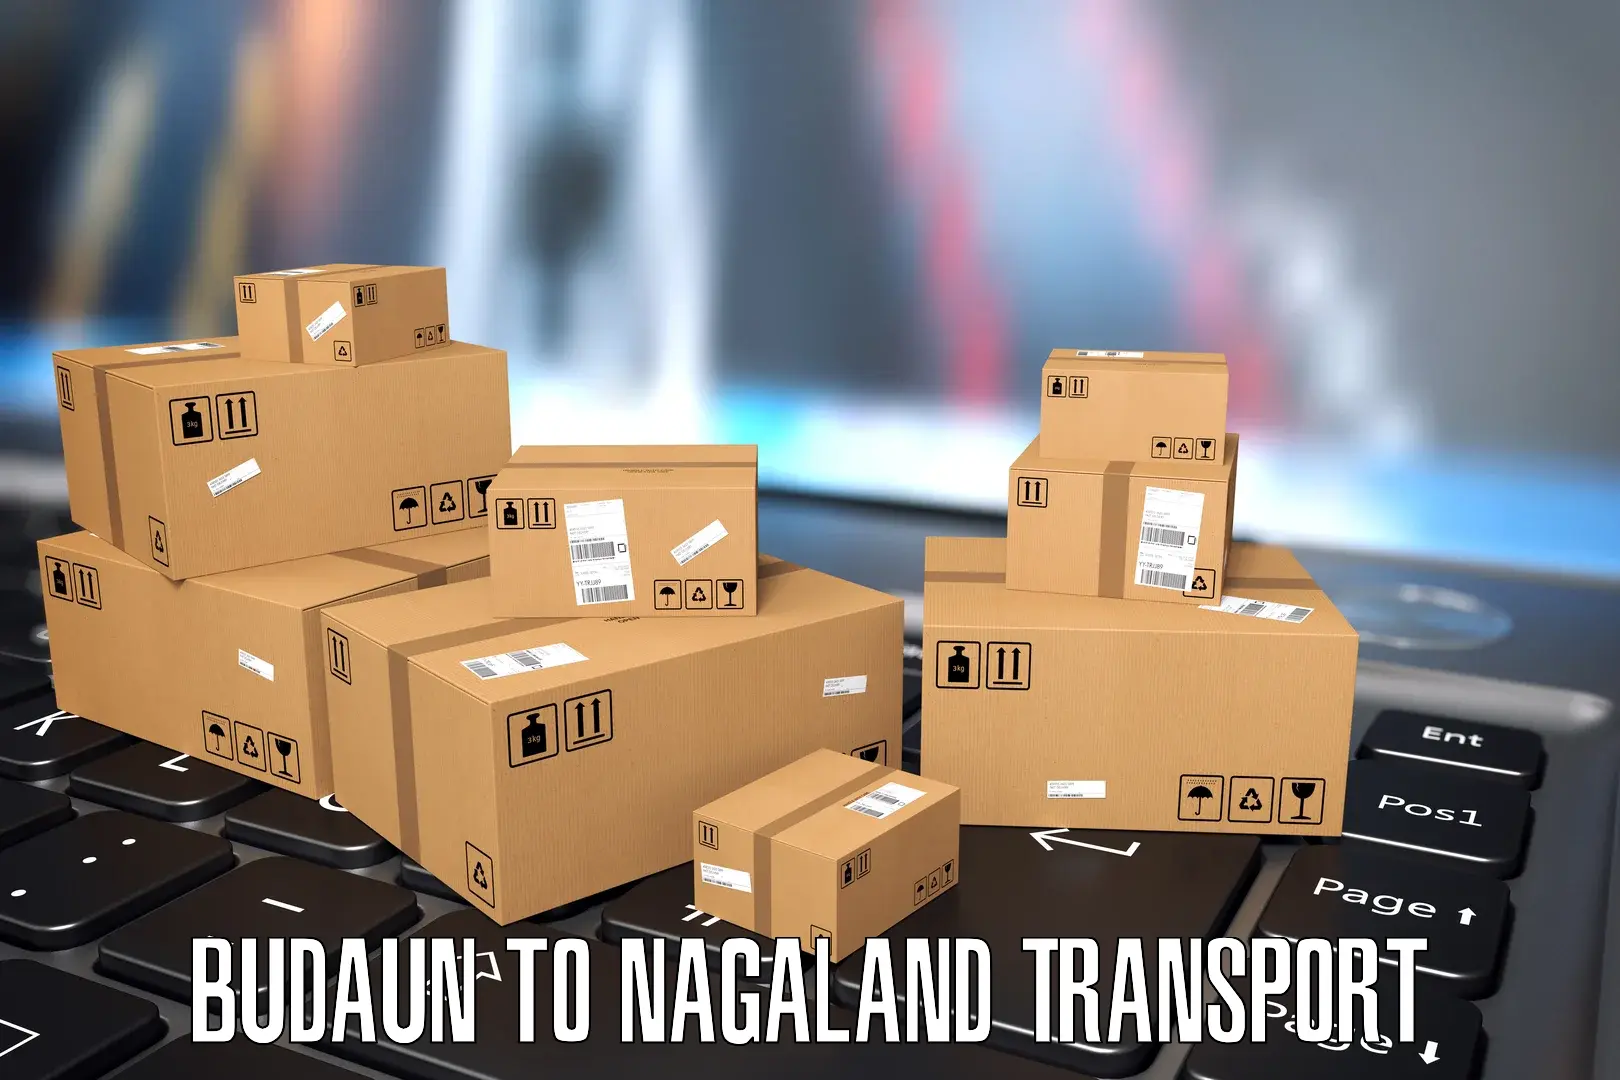 Air cargo transport services Budaun to Nagaland